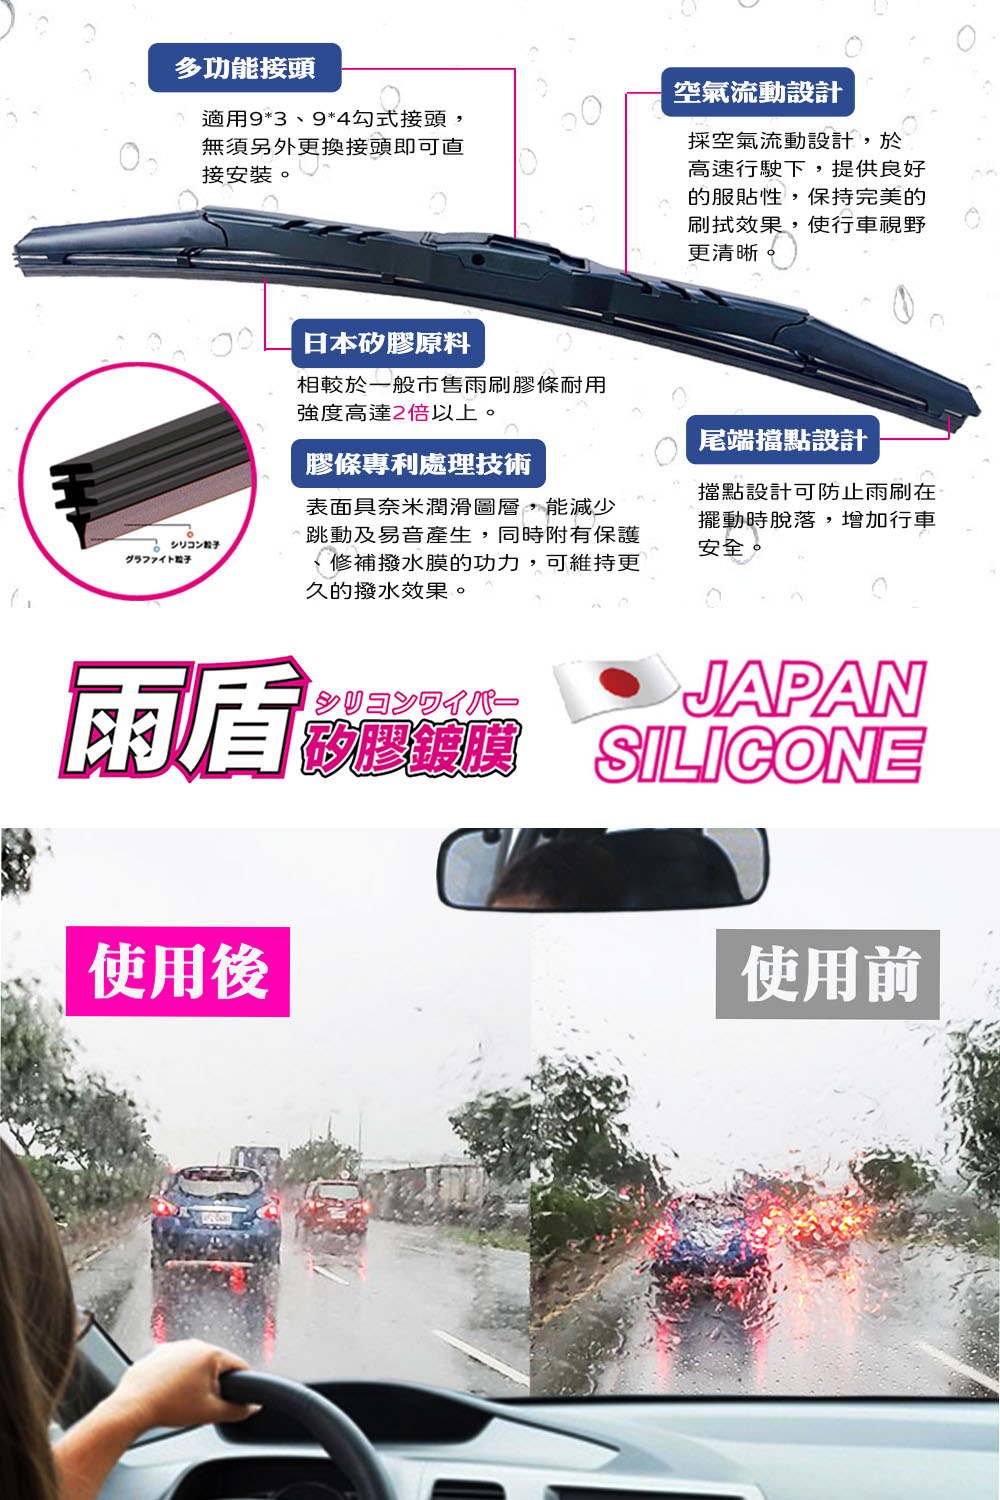 雨盾 Toyota Altis 各代專用矽膠鍍膜雨刷(日本膠